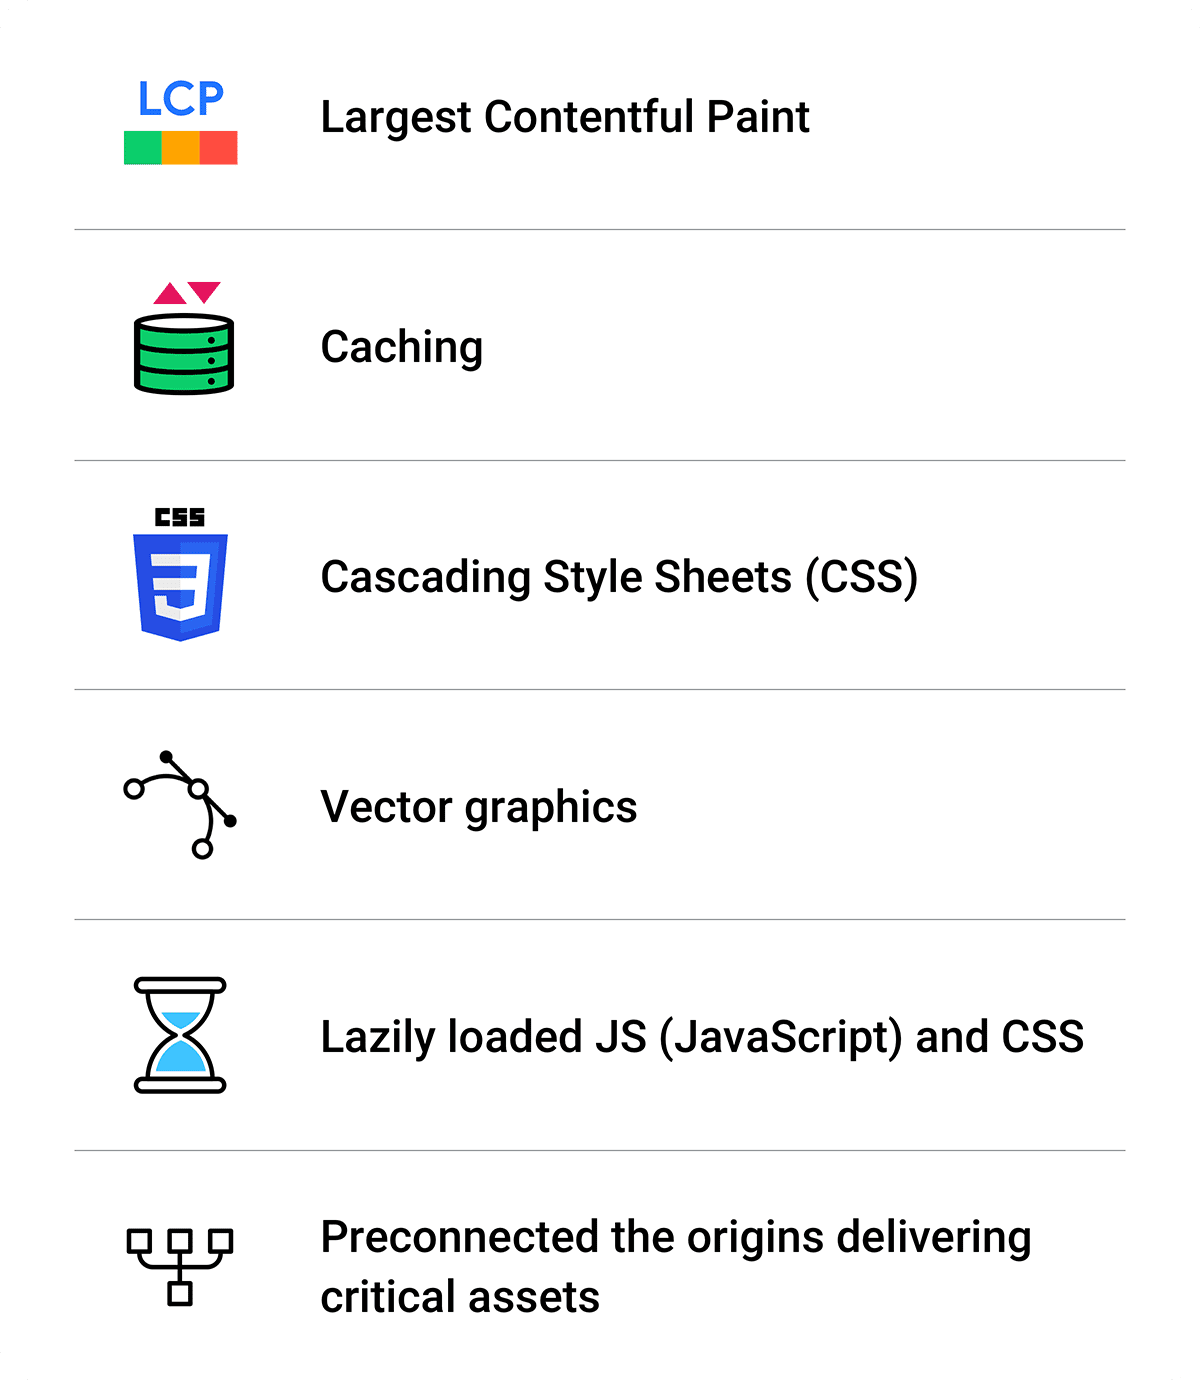 Un resumen de las optimizaciones: Largest Contentful Paint, almacenamiento en caché, CSS, gráficos vectoriales, JS y CSS de carga diferida, preconexión.